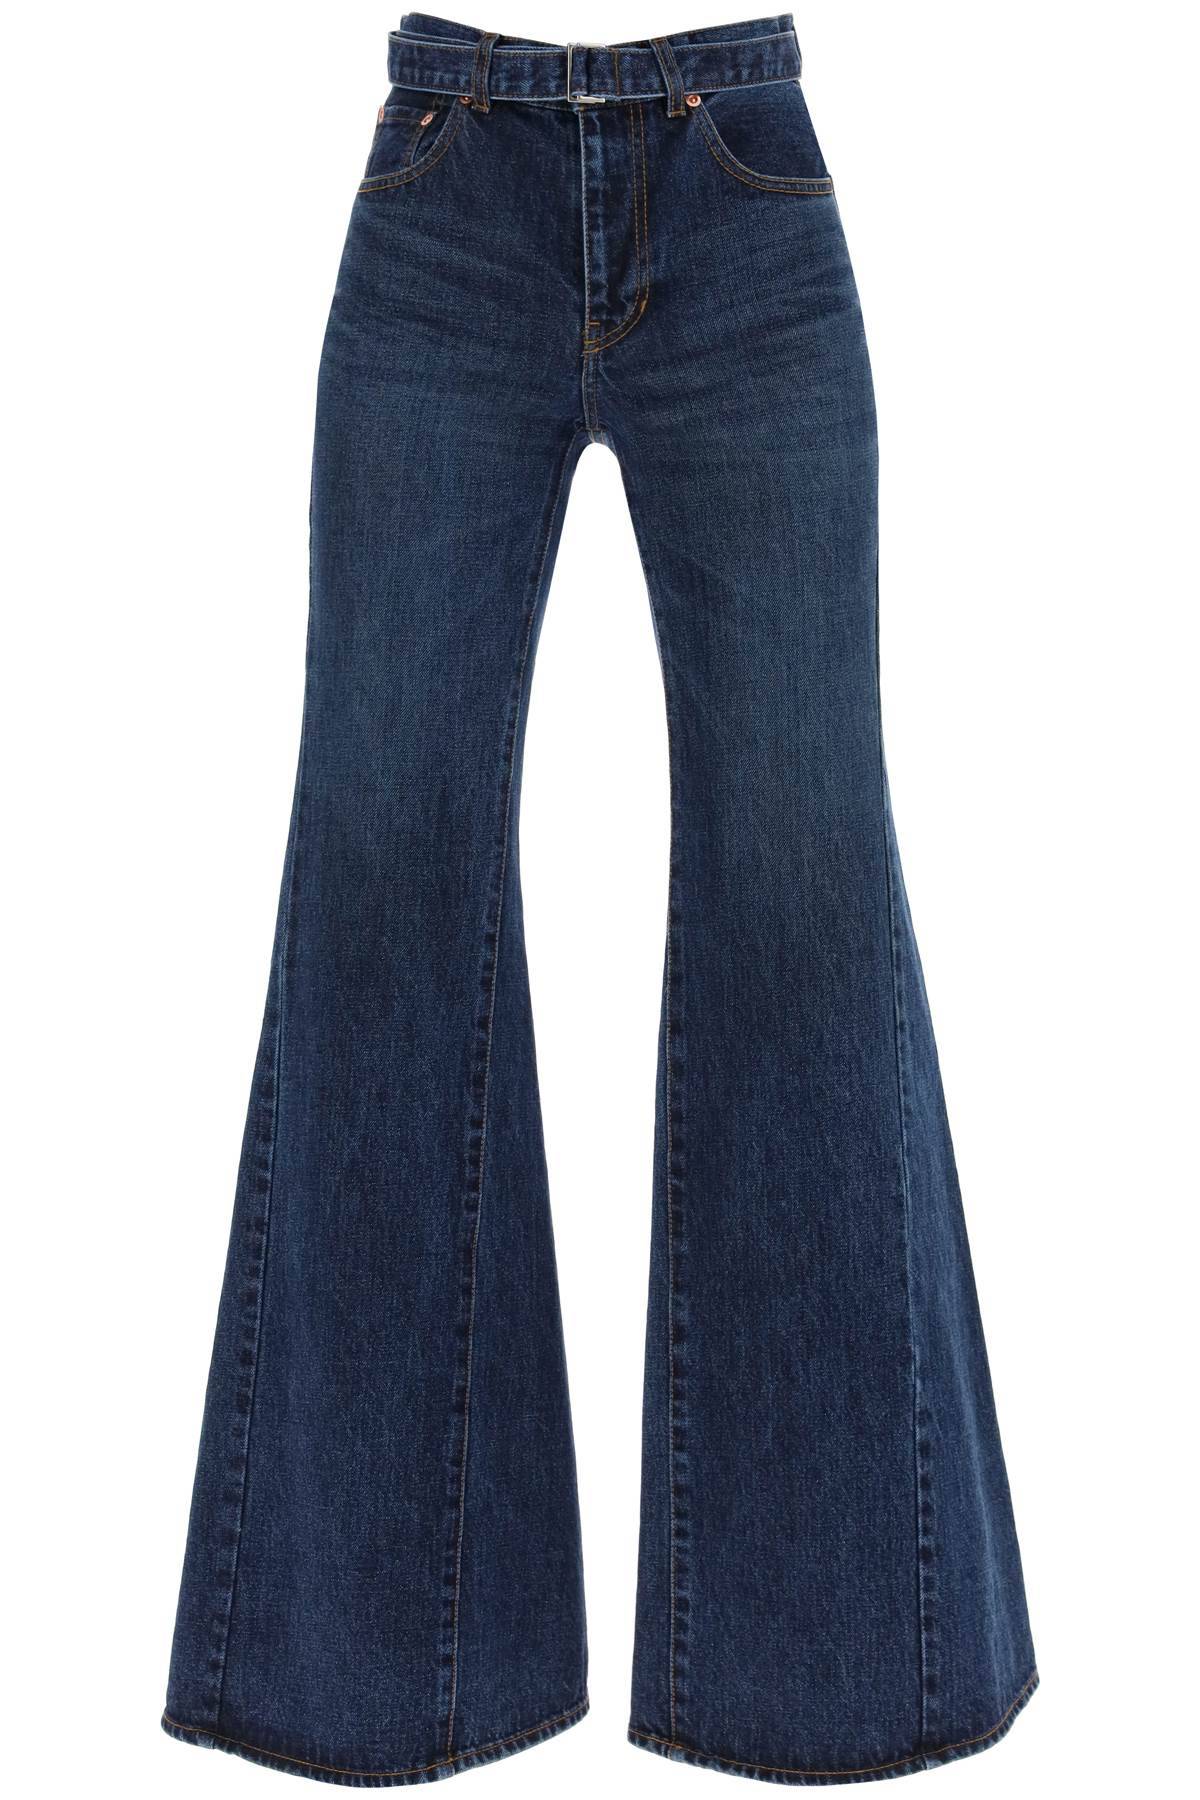 Sacai SACAI boot cut jeans with matching belt